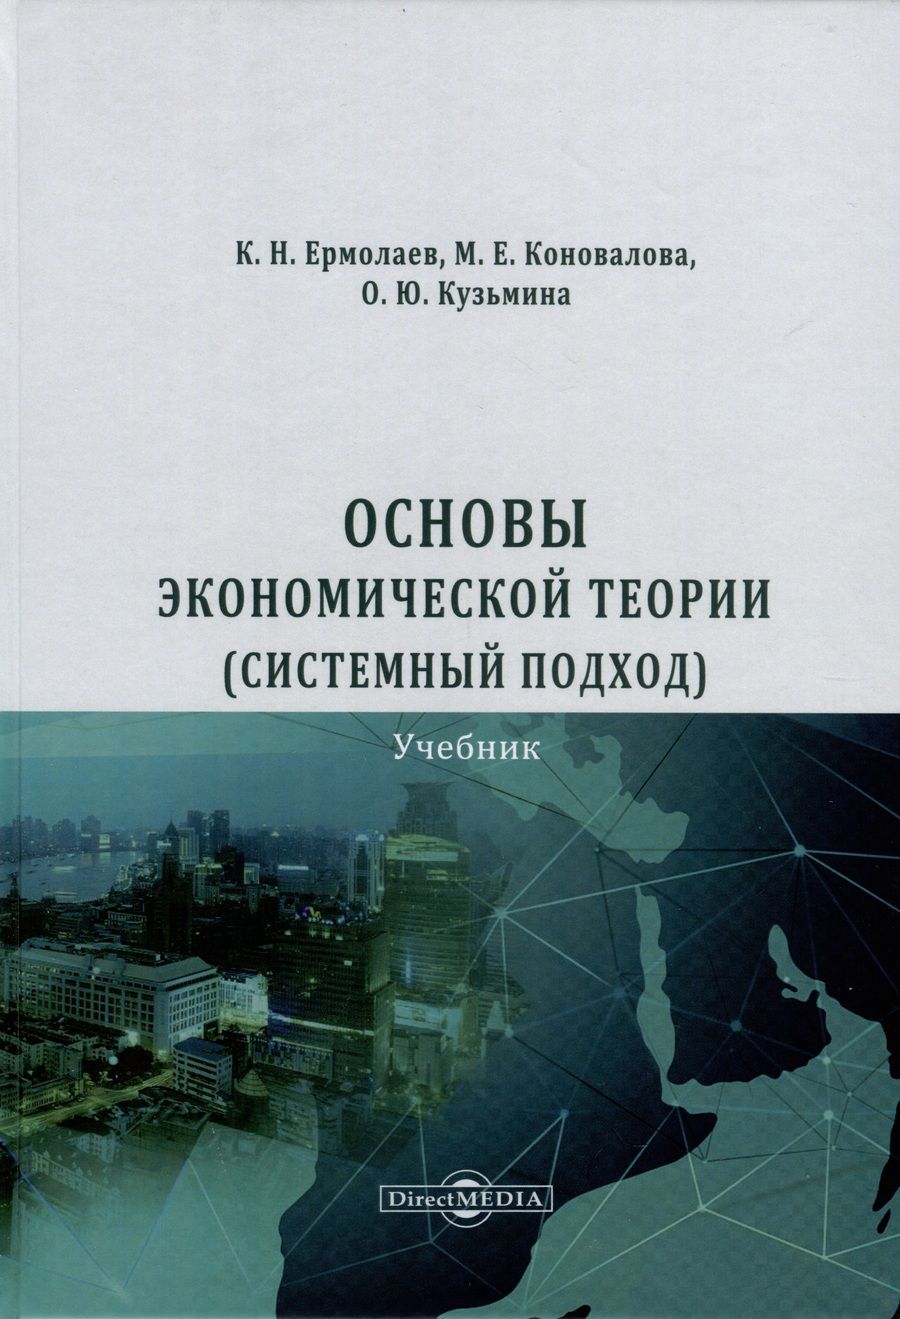 Обложка книги "Ермолаев, Коновалова, Кузьмина: Основы экономической теории. Системный подход. Учебник"